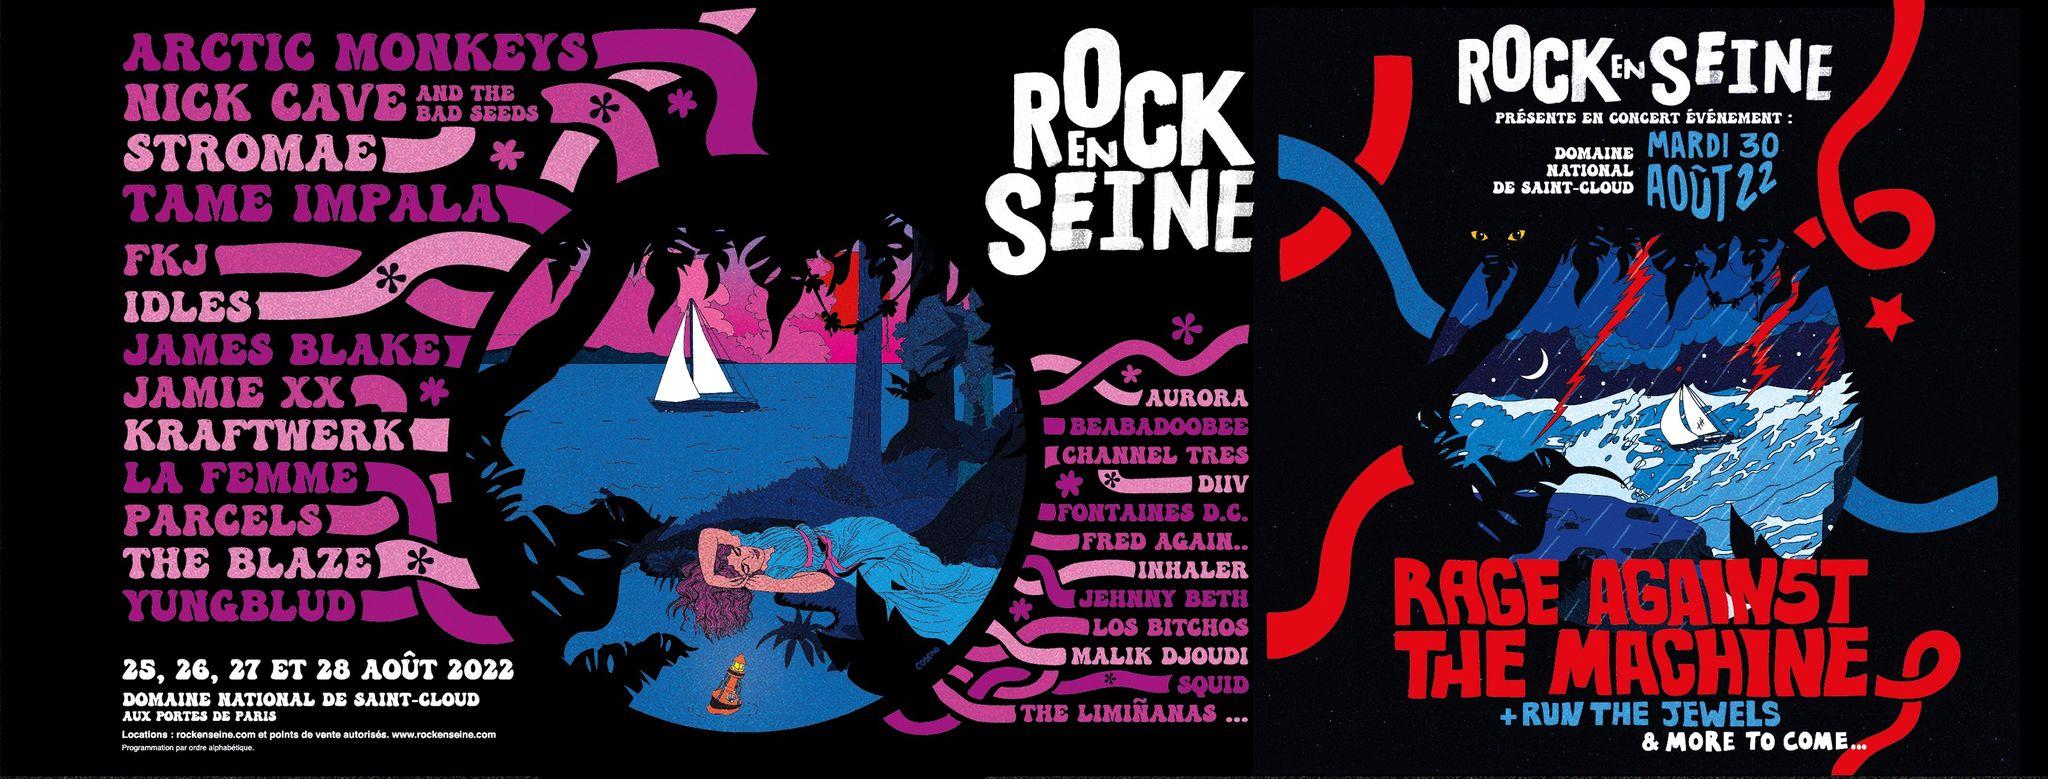 Le Festival Rock en seine est de retour du 25 au 30 août 2022 à Saint Cloud (92) pour une édition XL !